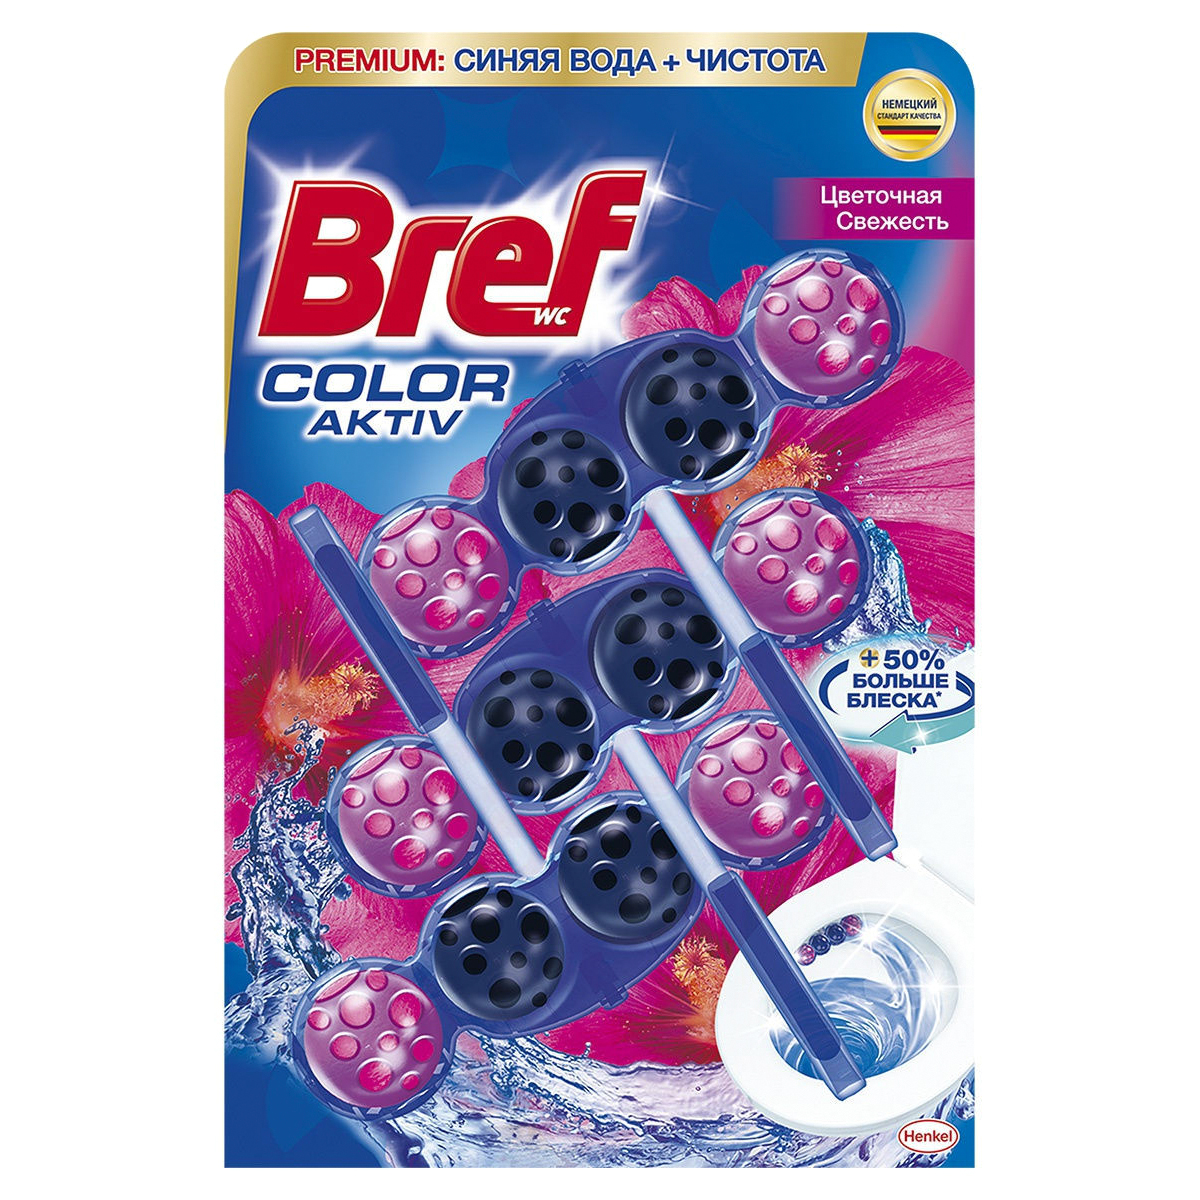 Блок туалетный Bref Color Aktiv Цветочная свежесть 3x50 г